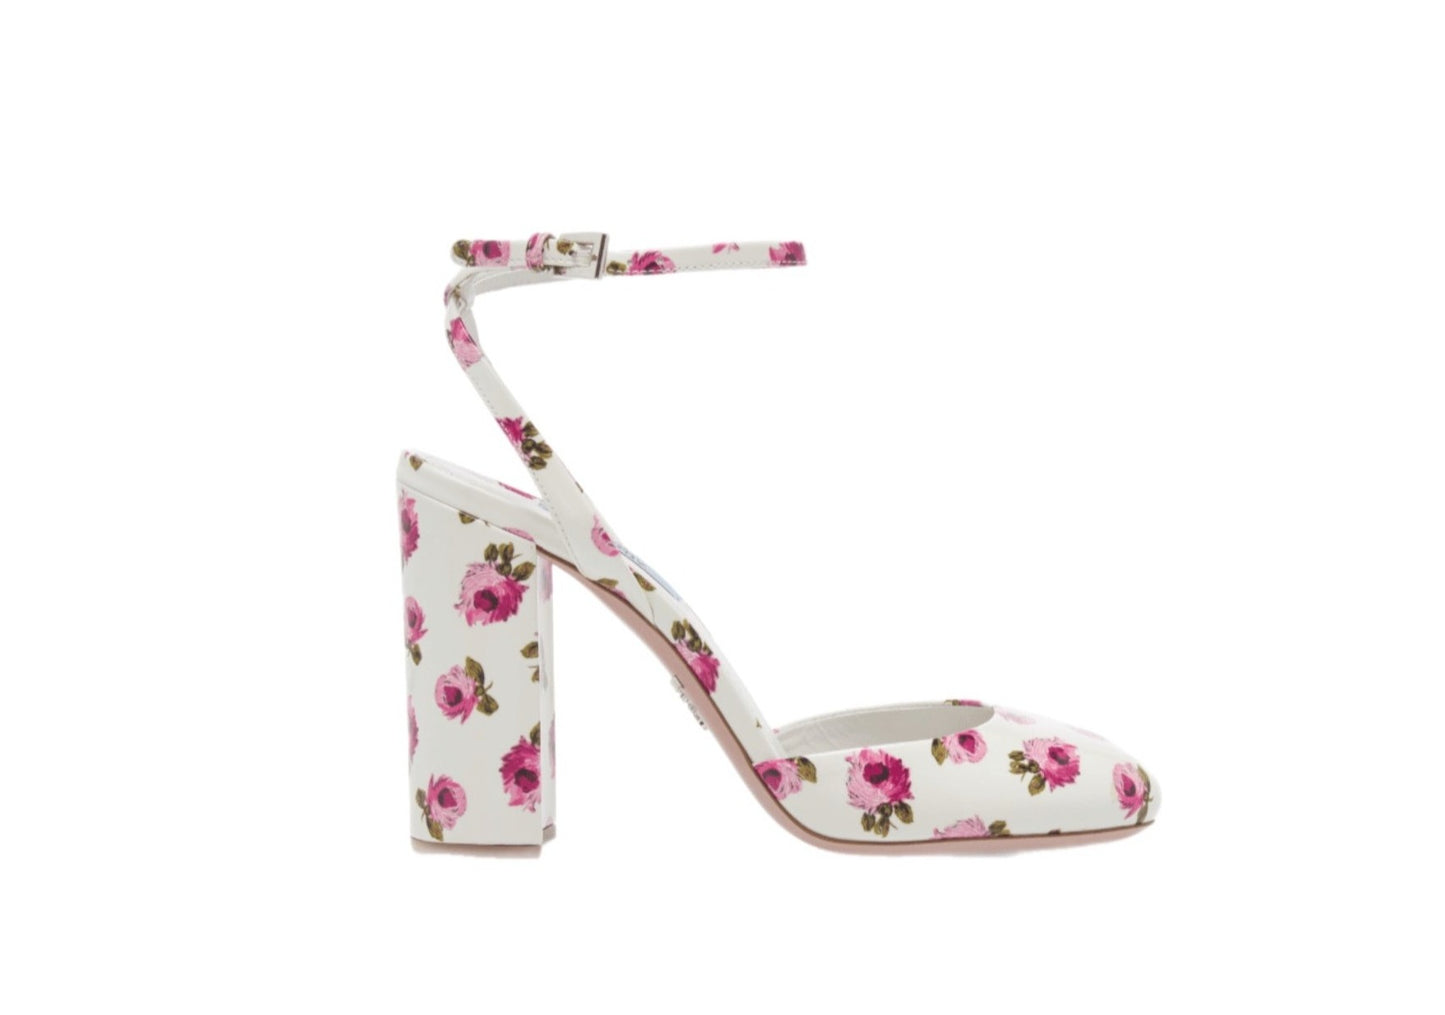 Prada Resort '20 runway floral-print heels